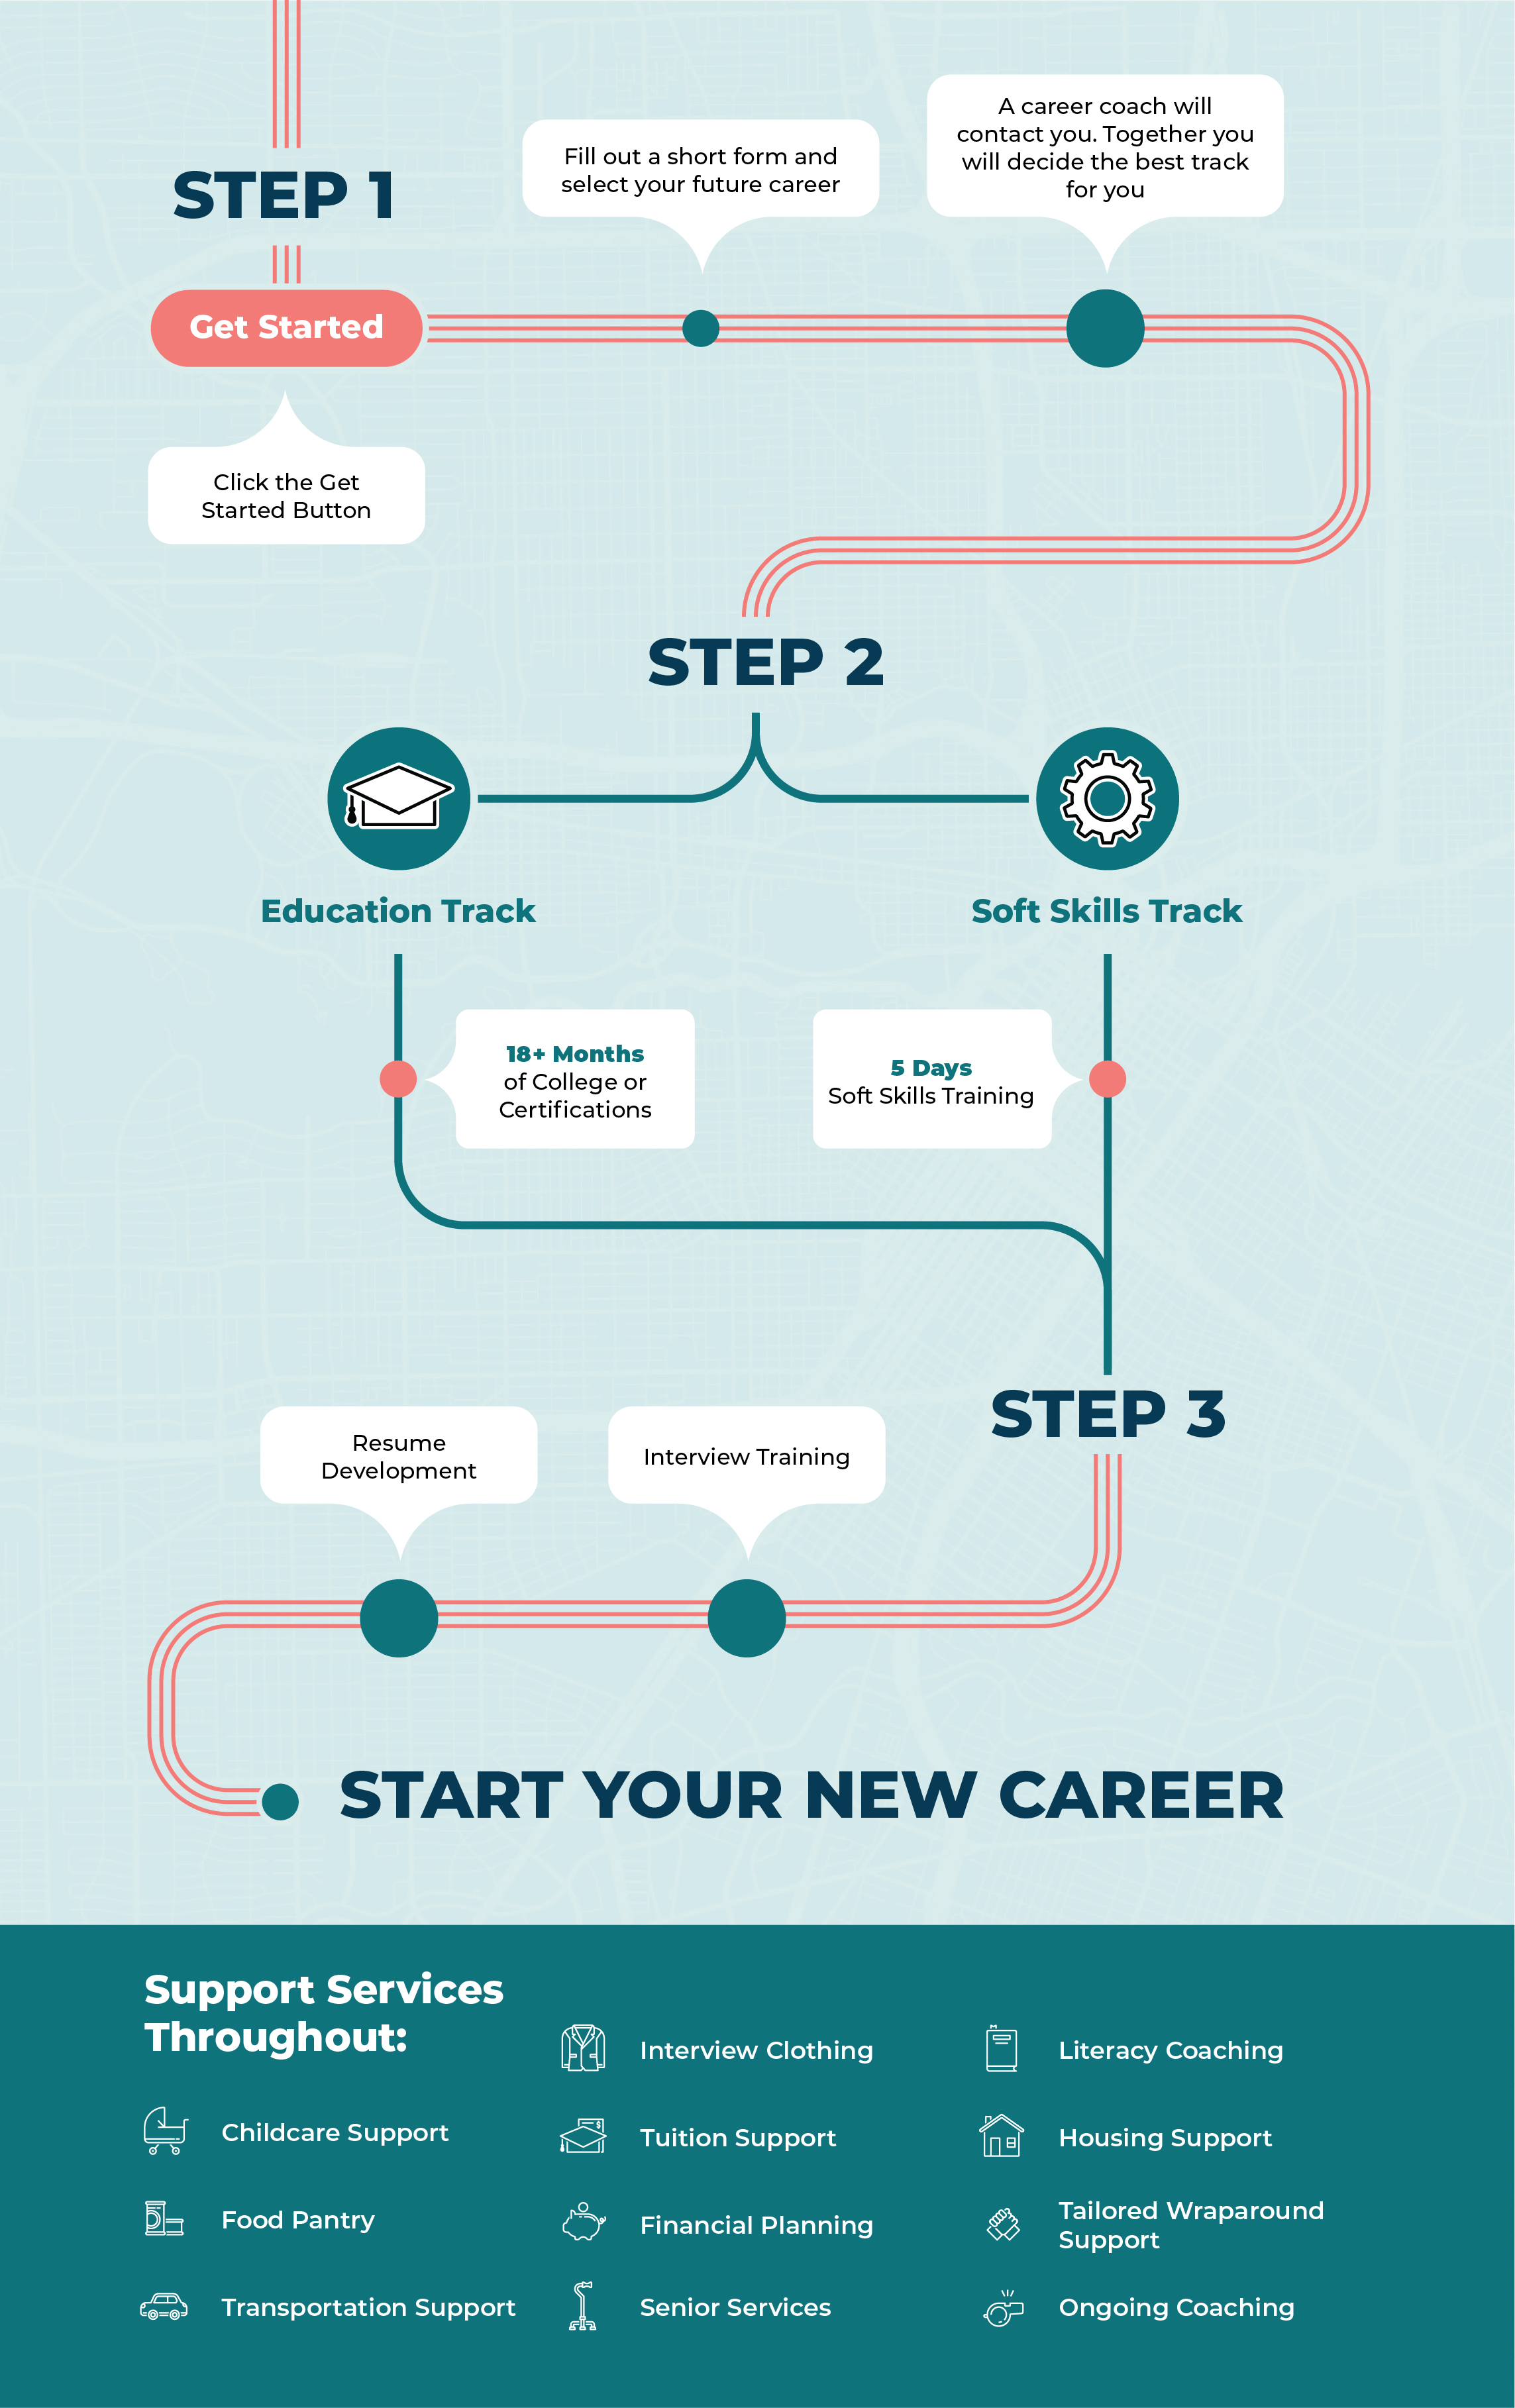 Start Your New Career